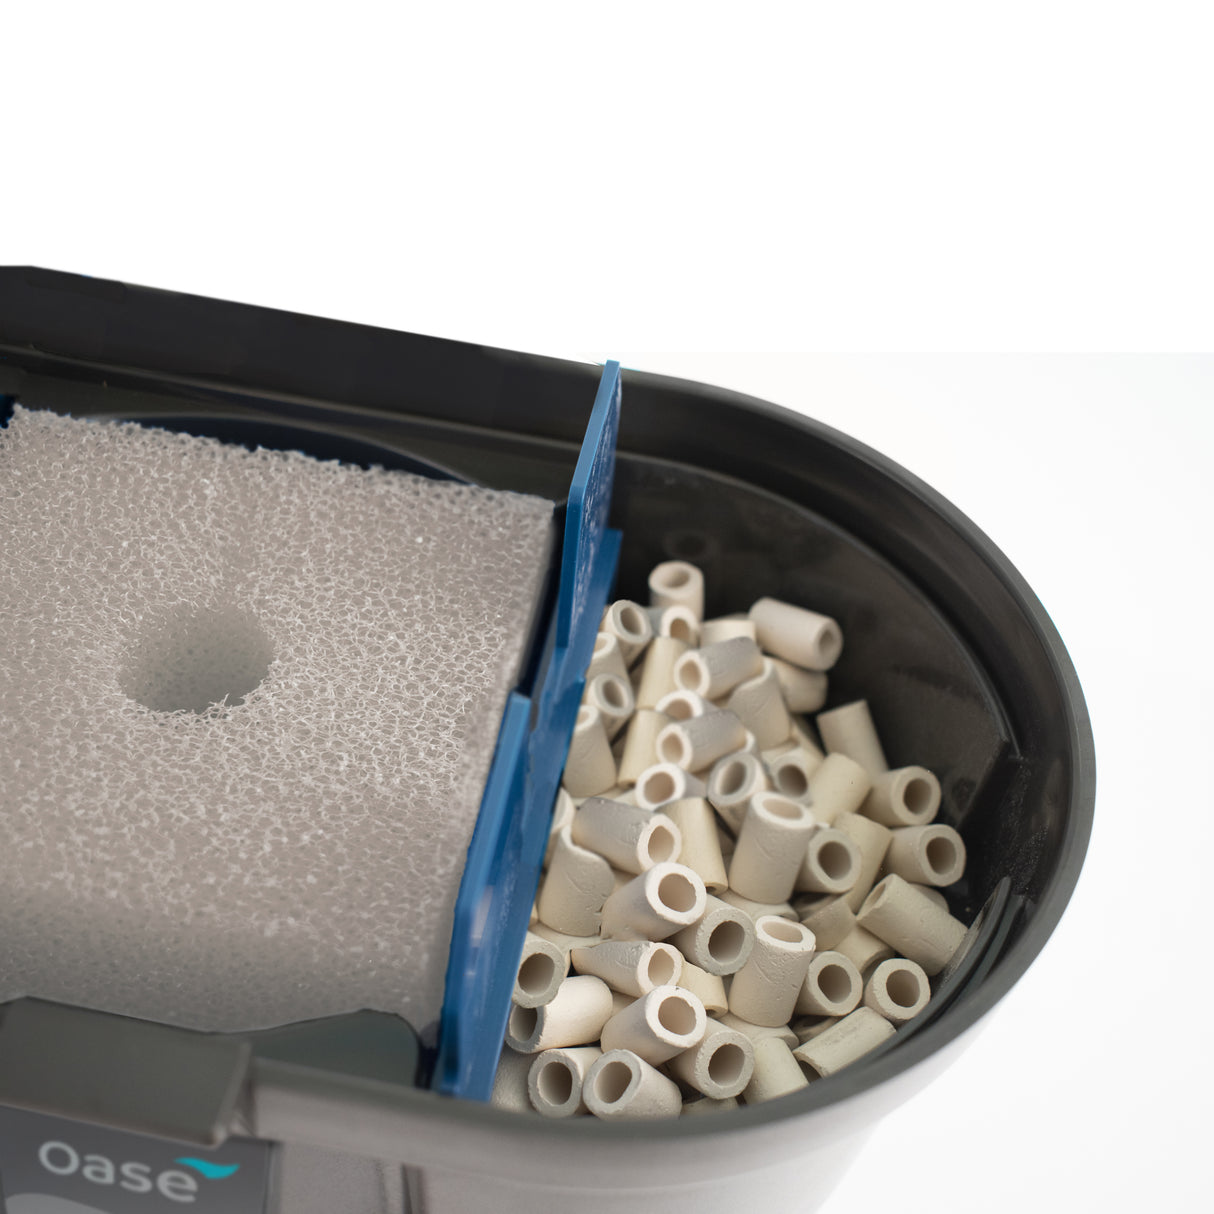 OASE Ceramic Filter Media Package of 14.8 oz in FiltoSmart